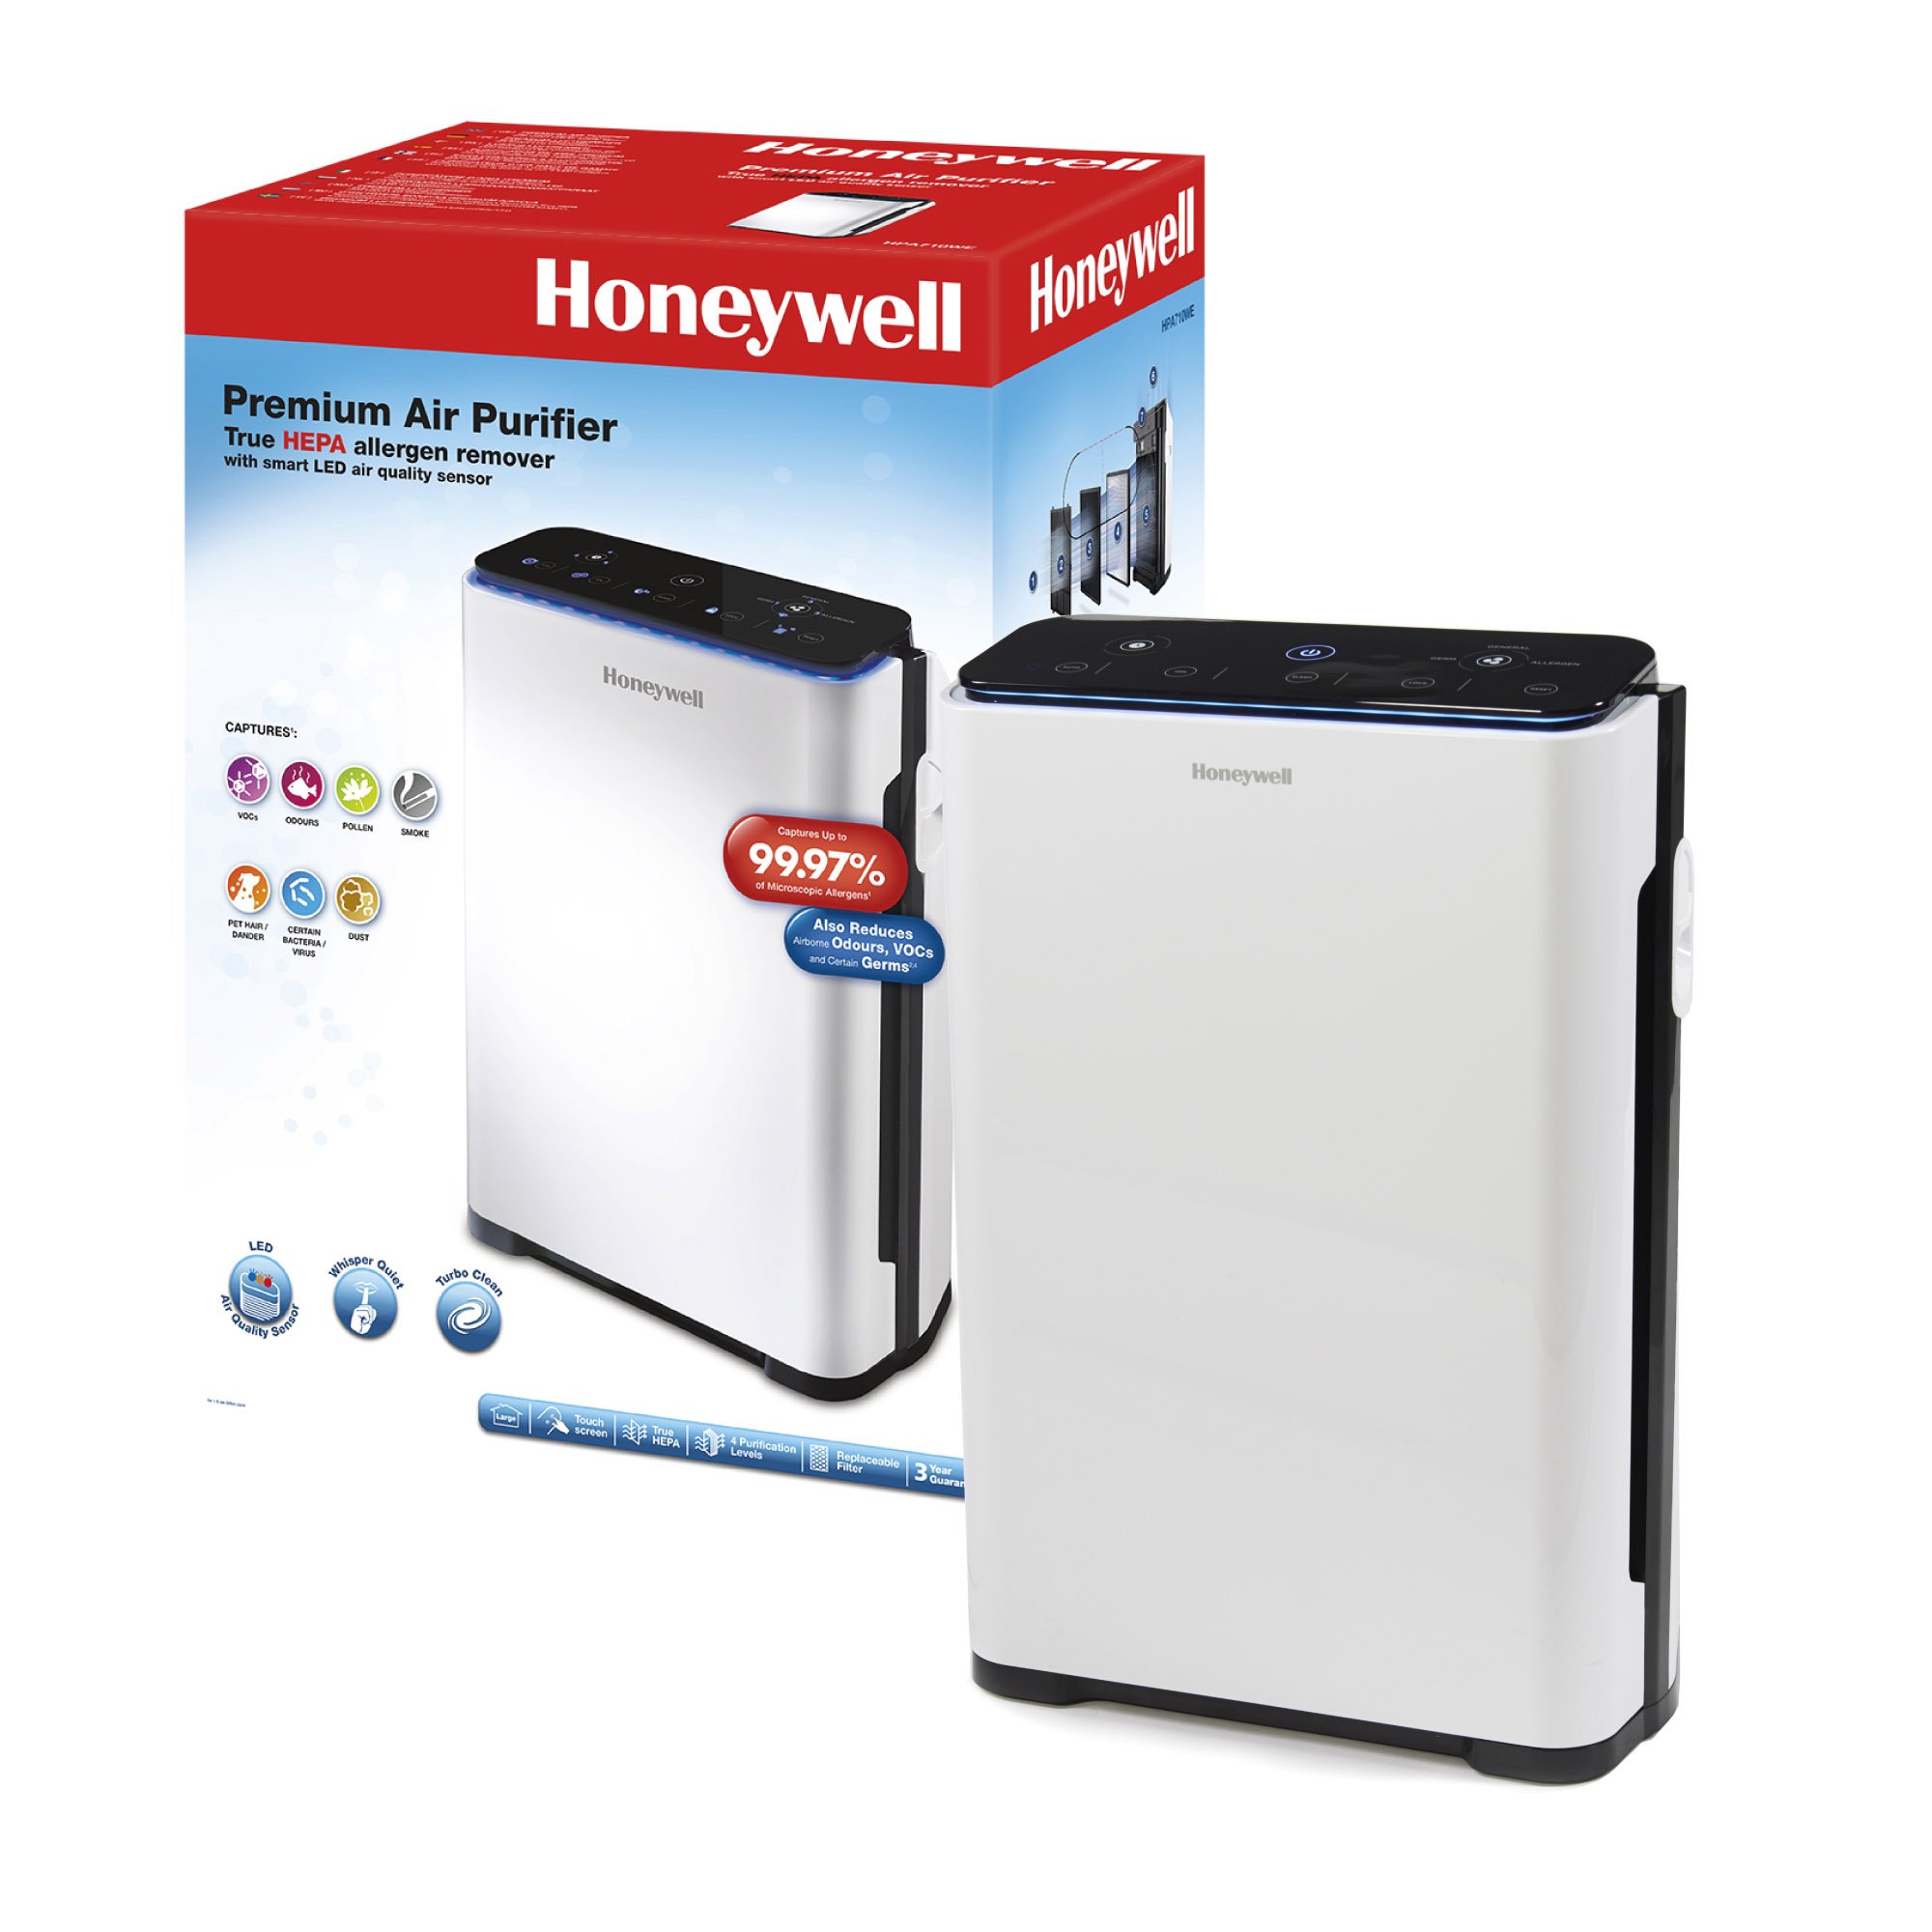 Purificator de aer Honeywell HPA710 True cu filtru HEPA, 5 moduri de purificare, cronometru… bekid.ro